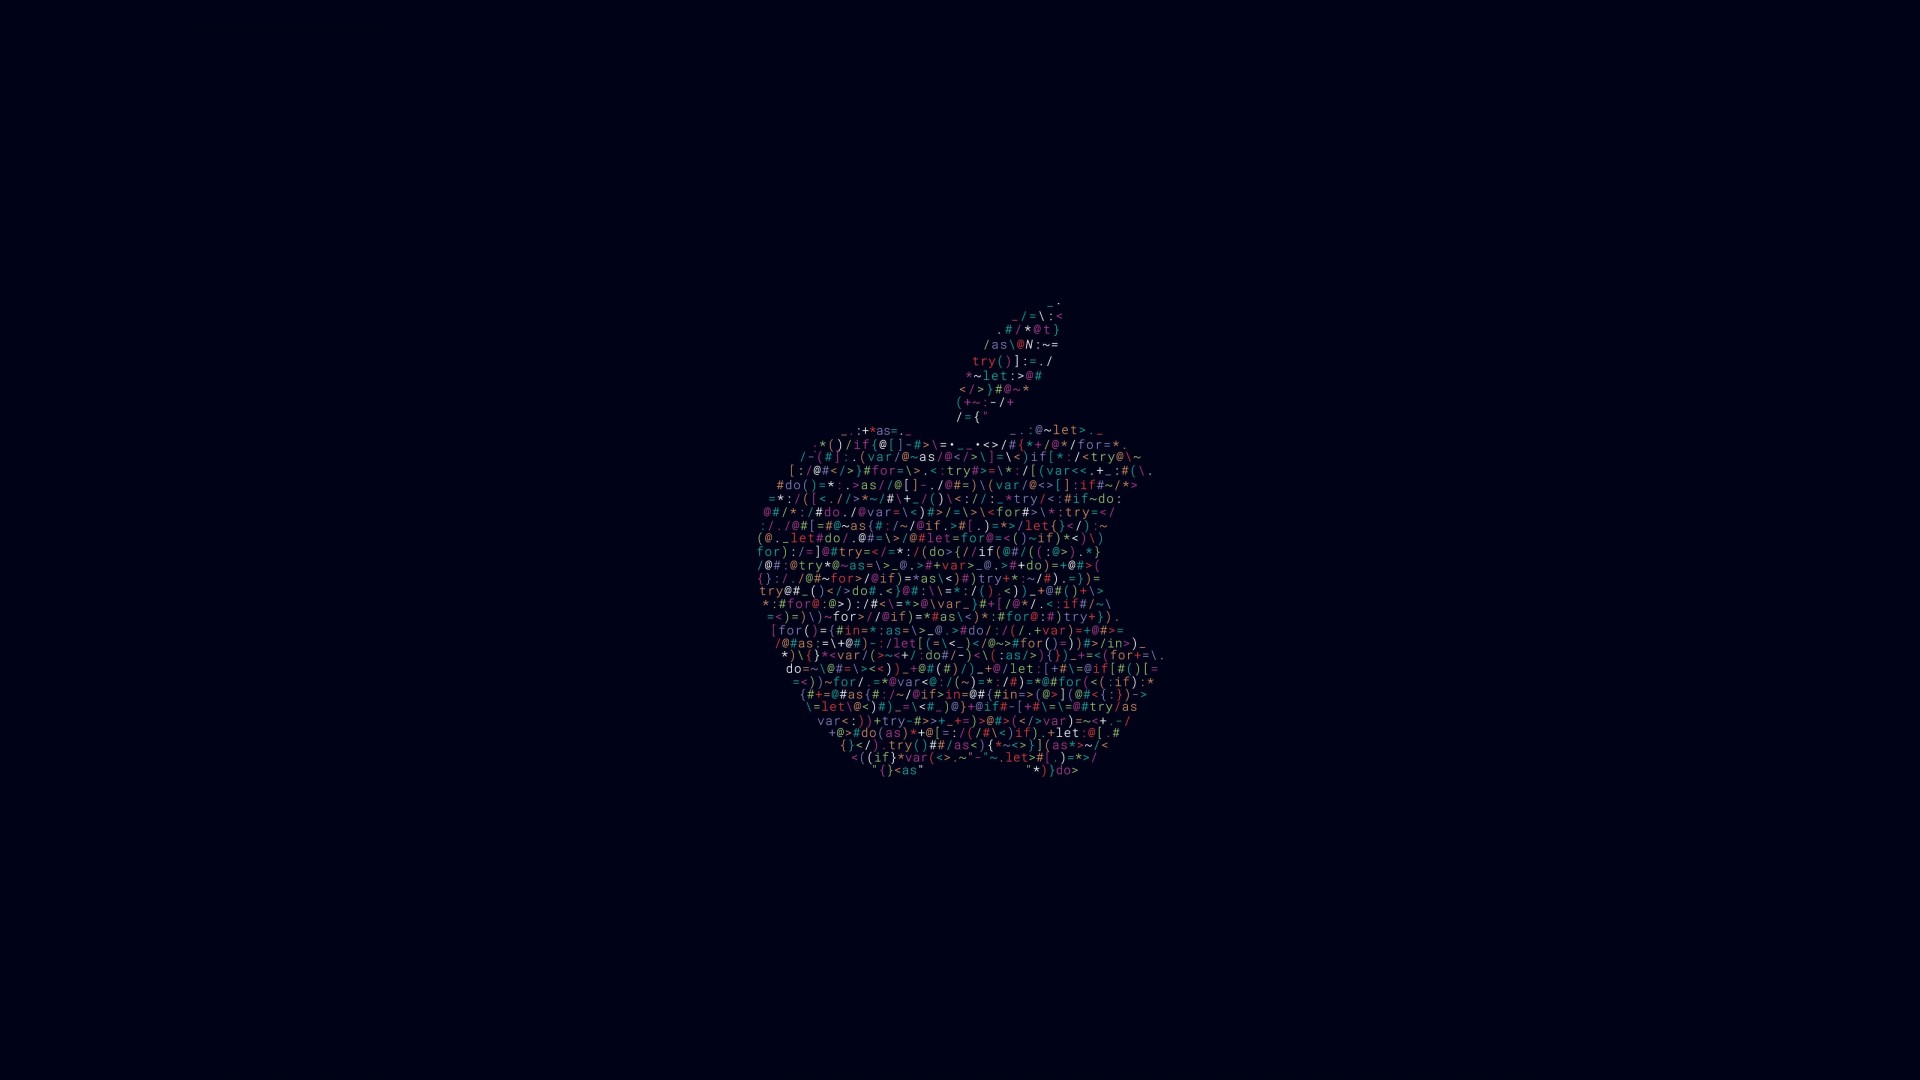 Apple WWDC 2016 Wallpaper for Desktop 1920x1080